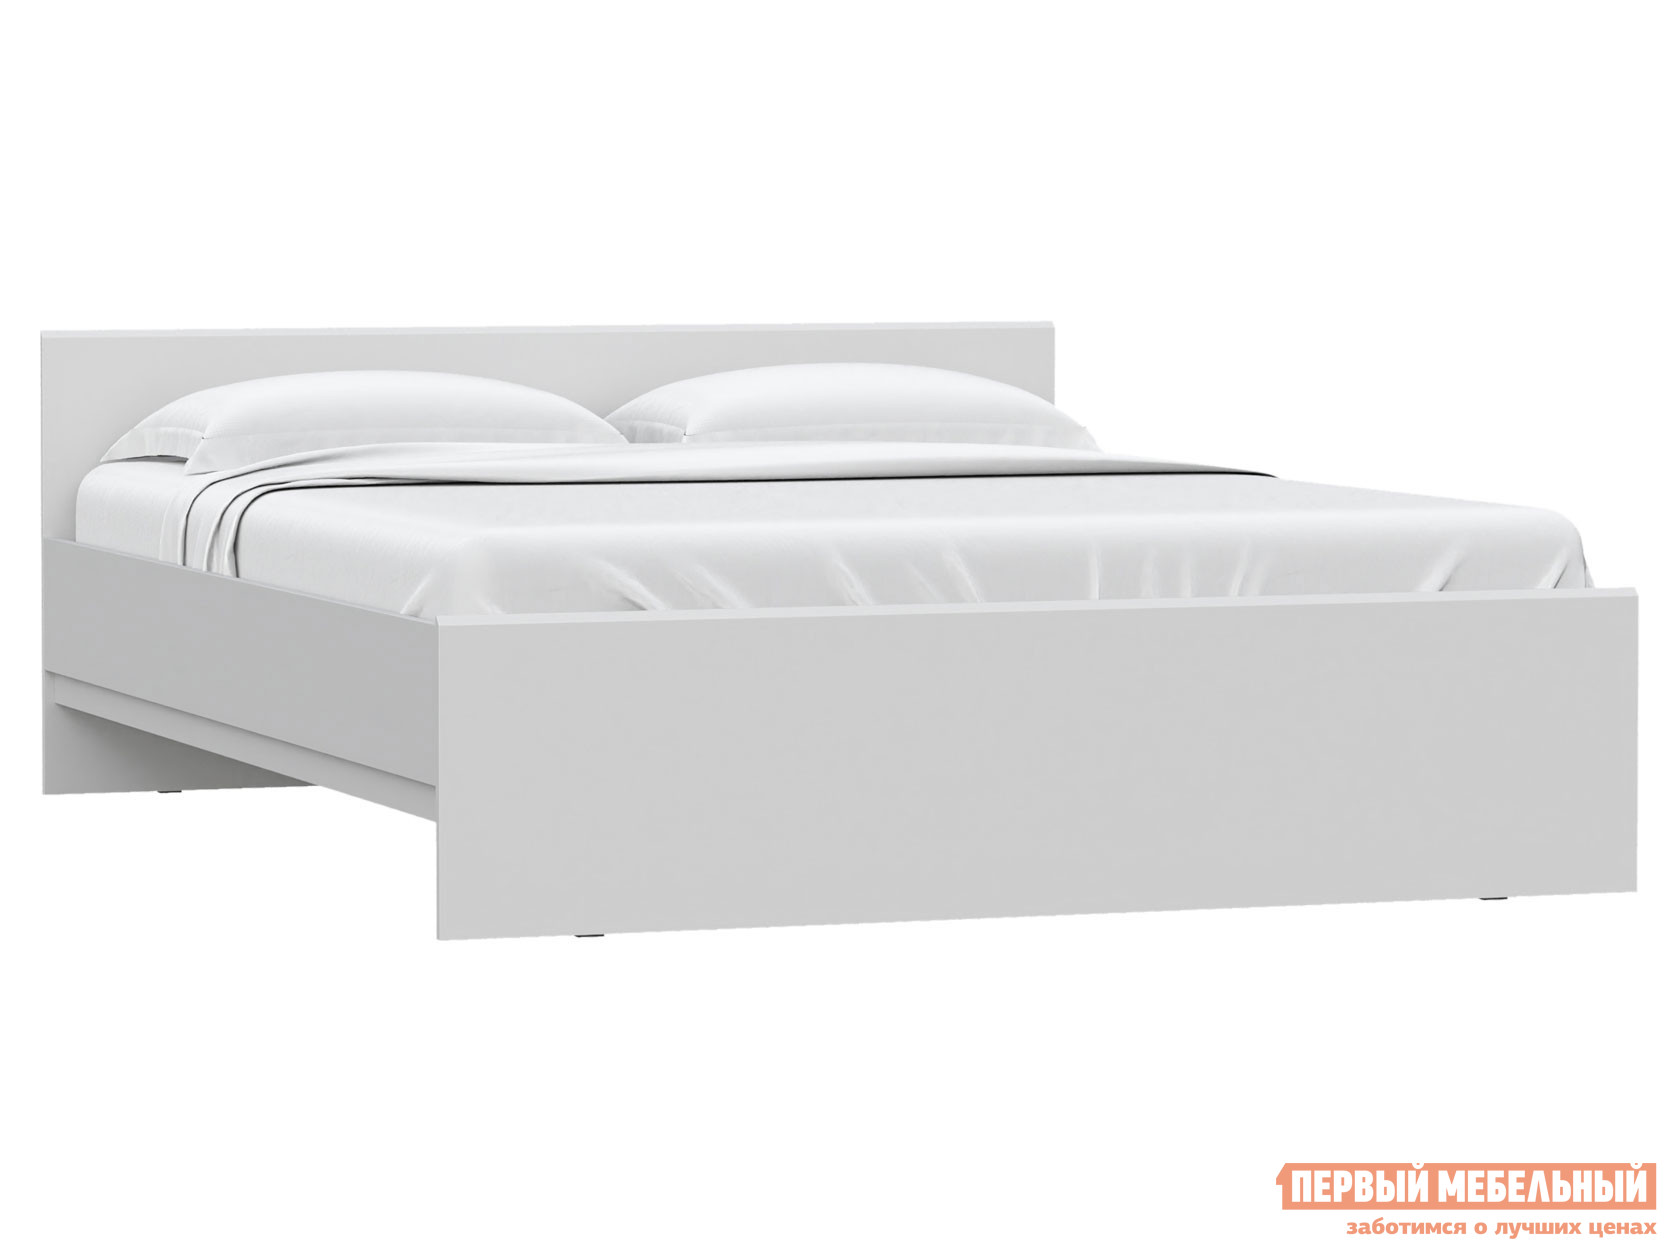 Двуспальная кровать  Штерн Белый матовый, 160х200 см